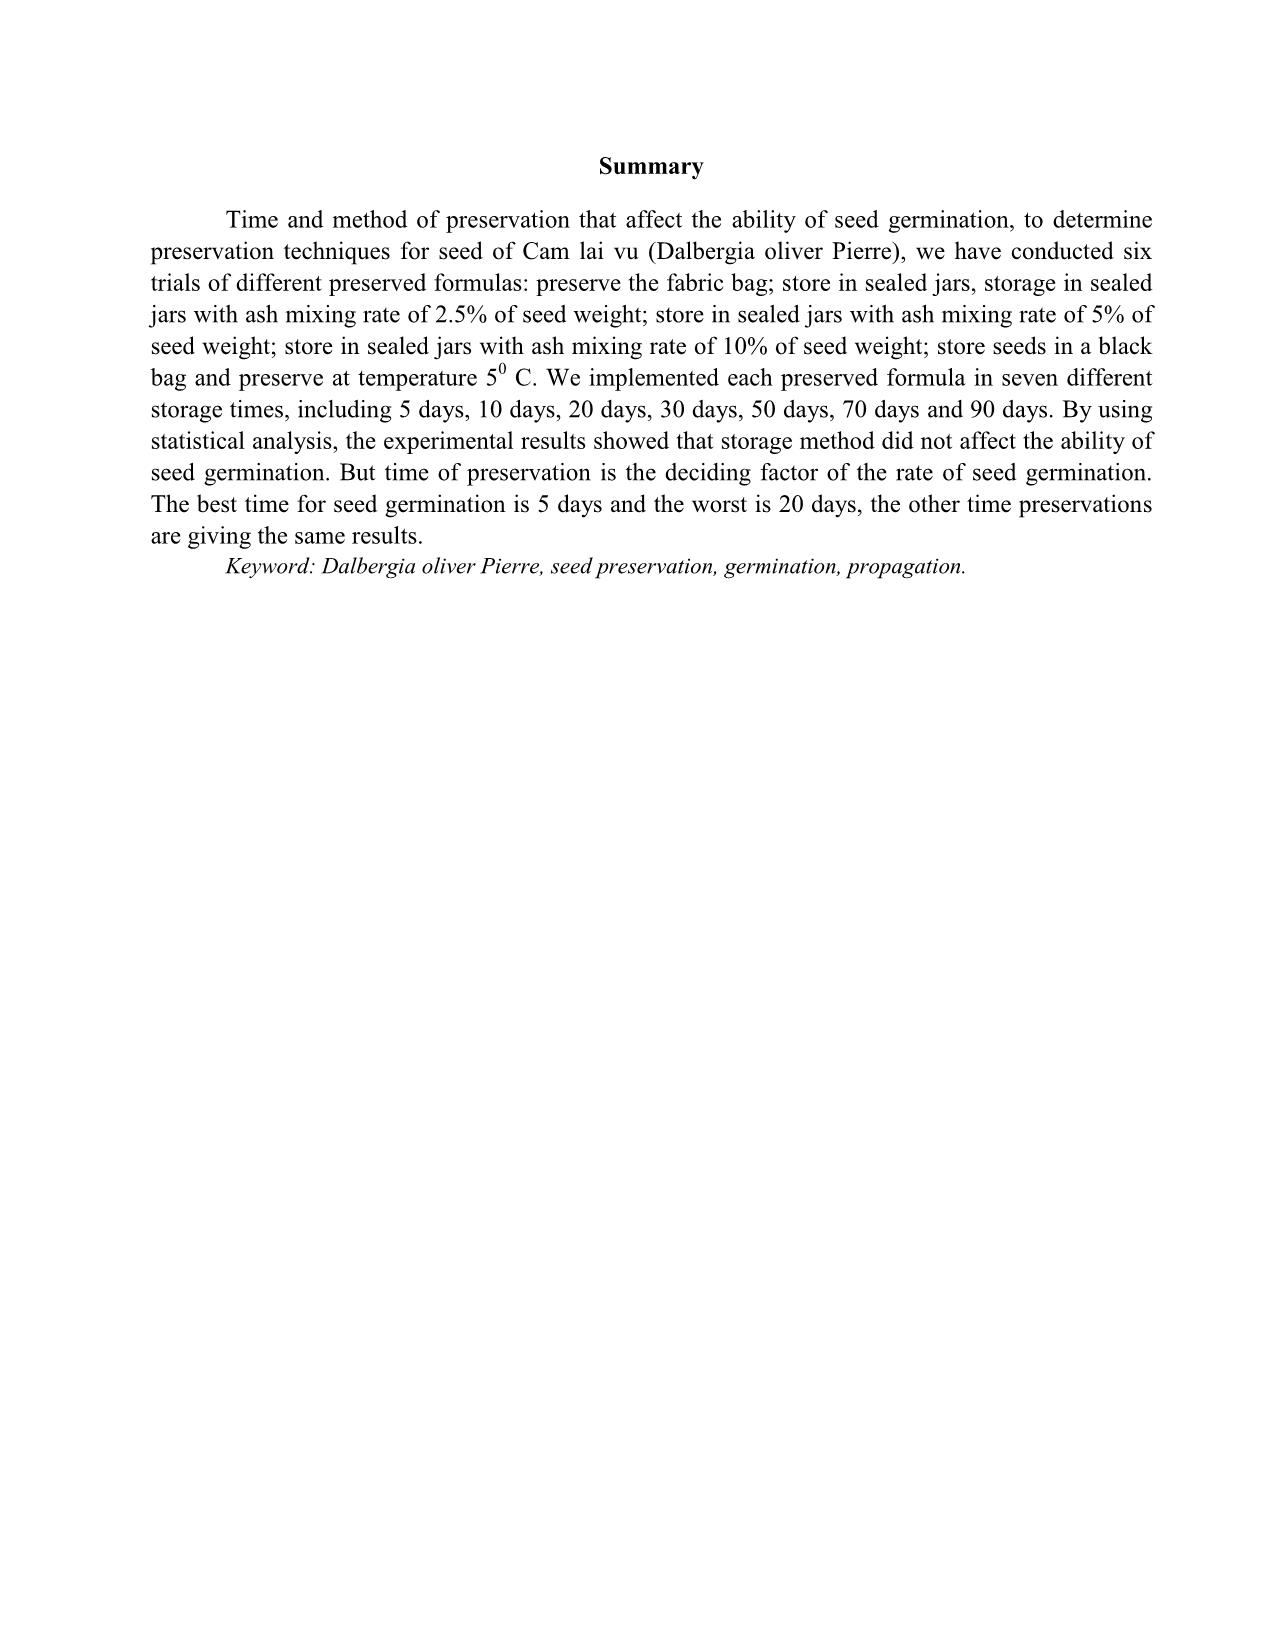 Ảnh hưởng của phương pháp bảo quản đến tỷ lệ nảy mẩm của hạt cẩm lai vú (Dalbergia oliver Pierre) trang 7